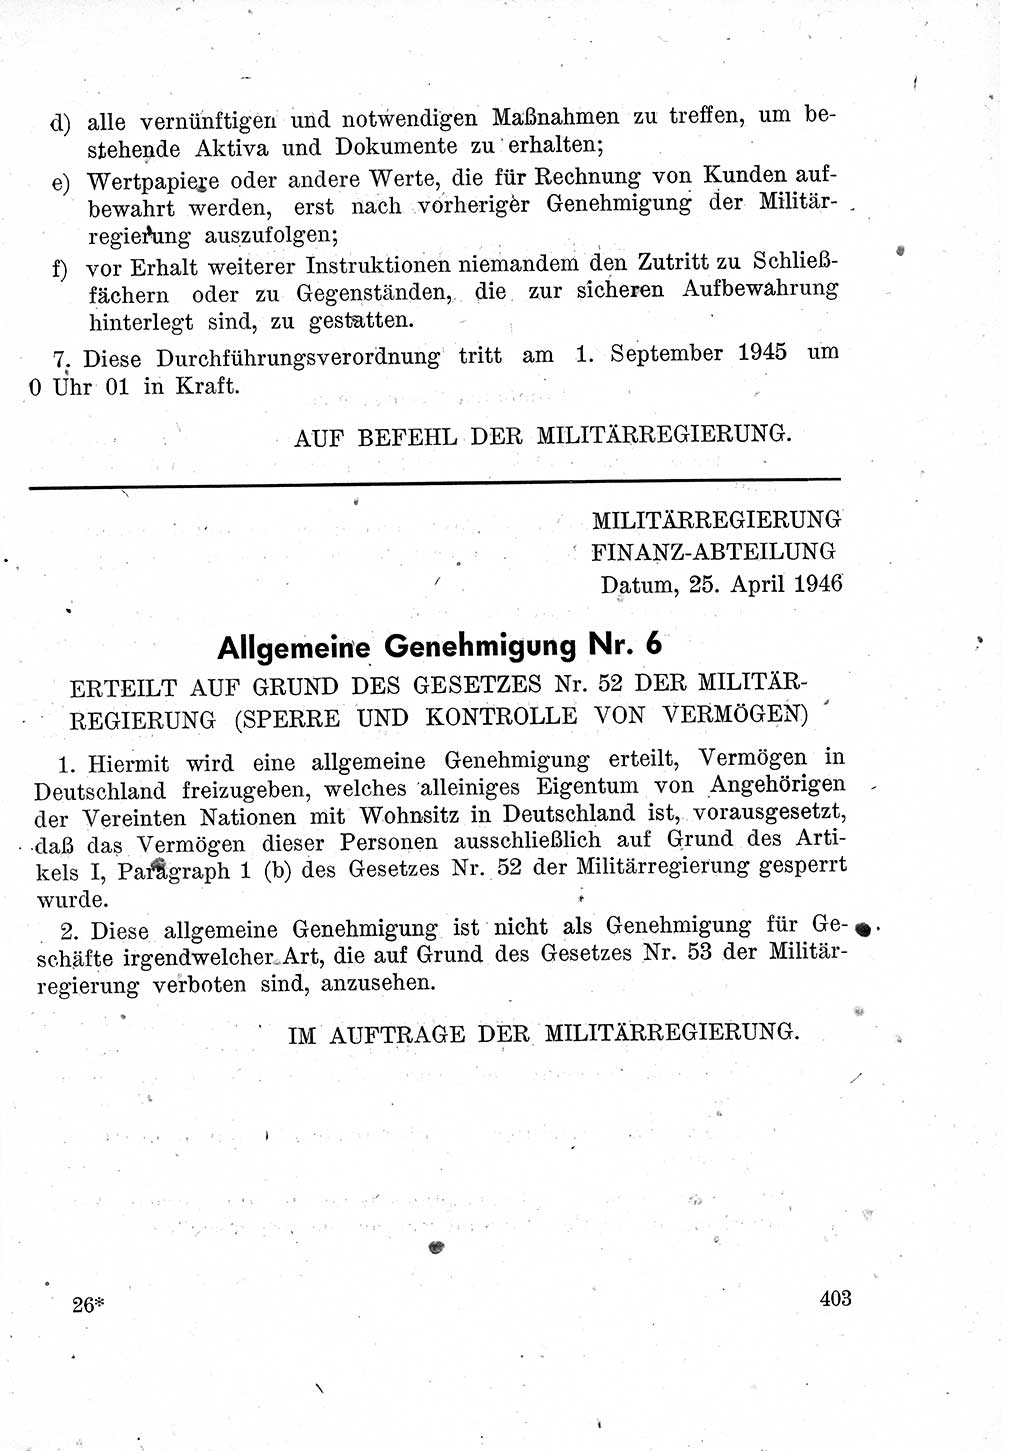 Das Recht der Besatzungsmacht (Deutschland), Proklamationen, Deklerationen, Verordnungen, Gesetze und Bekanntmachungen 1947, Seite 403 (R. Bes. Dtl. 1947, S. 403)